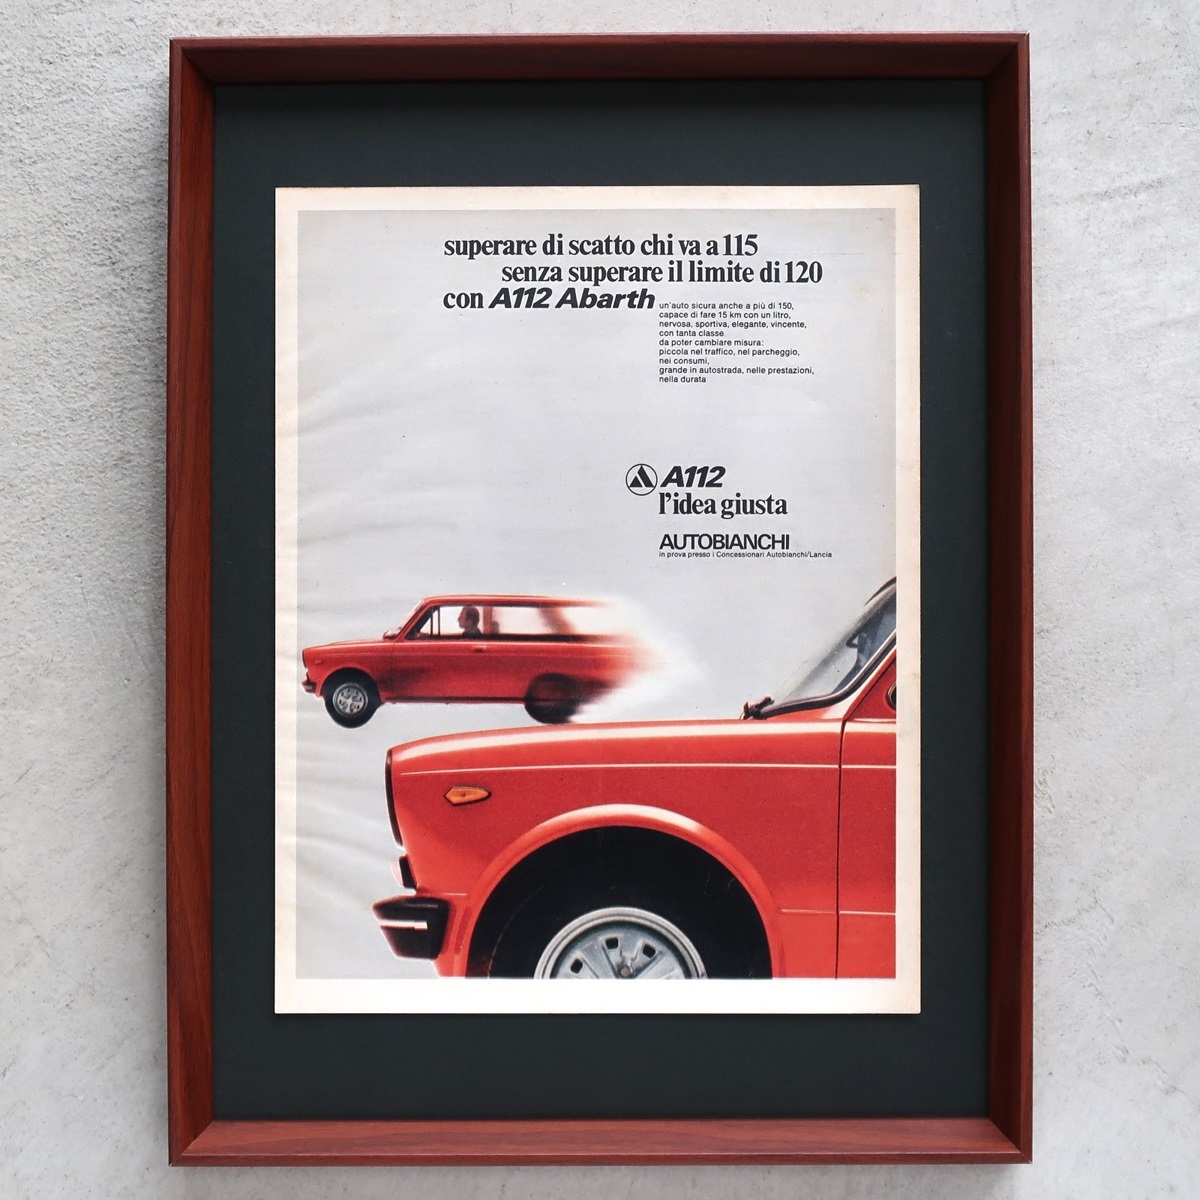 AUTOBIANCHI アウトビアンキ 1974年 A112 アバルト Abarth イタリア ヴィンテージ 広告 額装品 コレクション インテリア ポスター 稀少_画像1